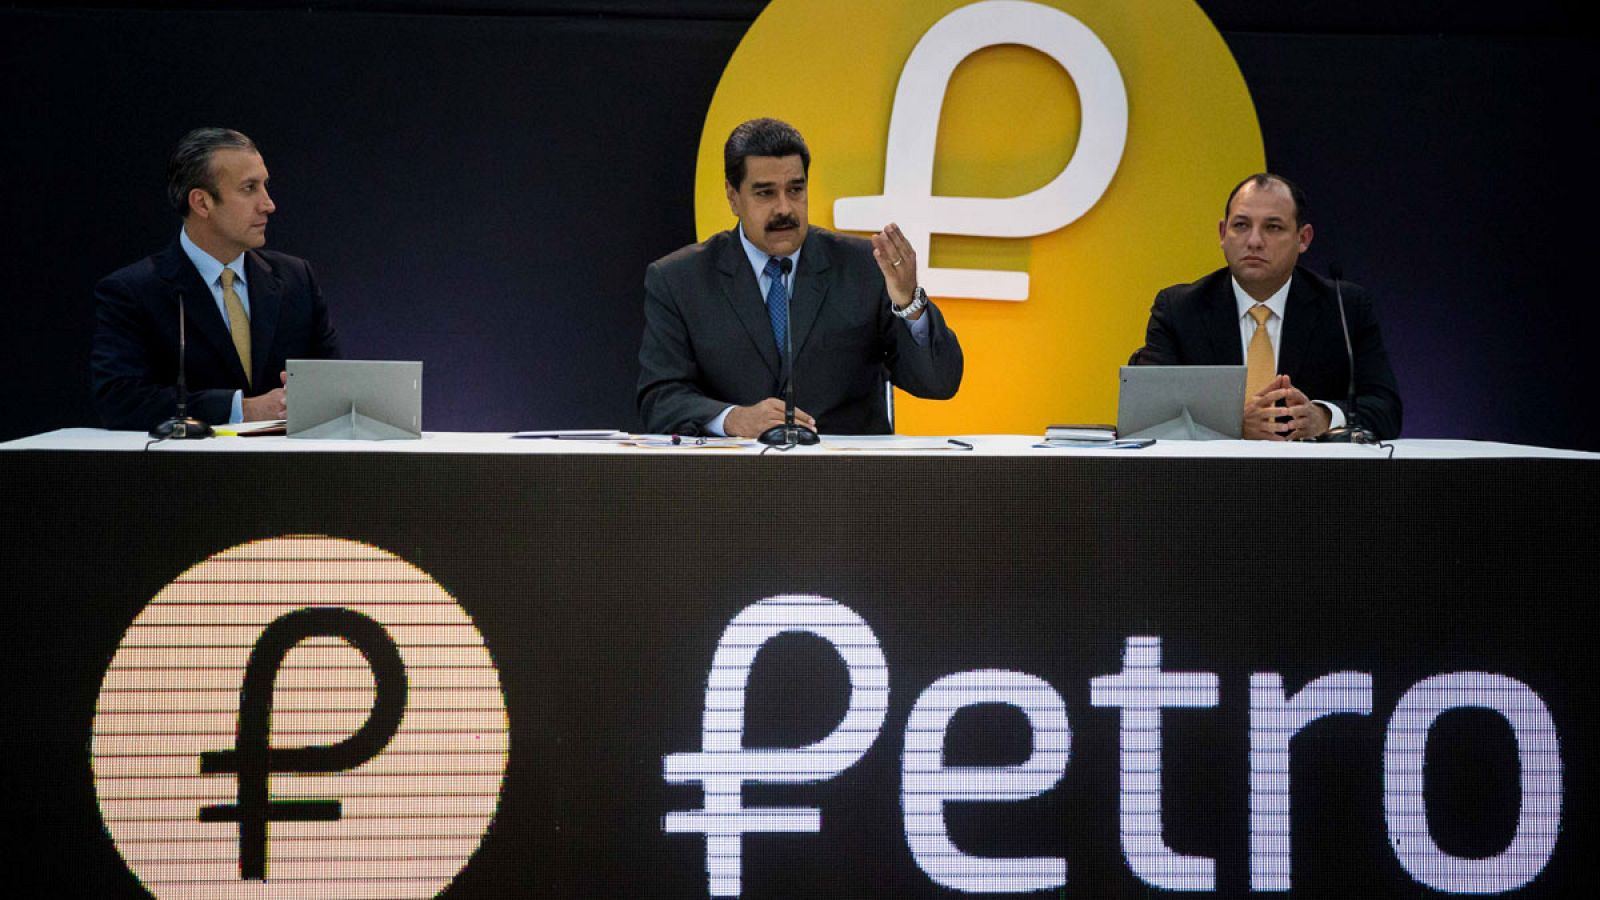 El presidente de Venezuela, Nicolás Maduro, junto al vicepresidente y el ministro para la Educación Universitaria, Ciencia y Tecnología, en la presentación de la activación de la criptomoneda petro